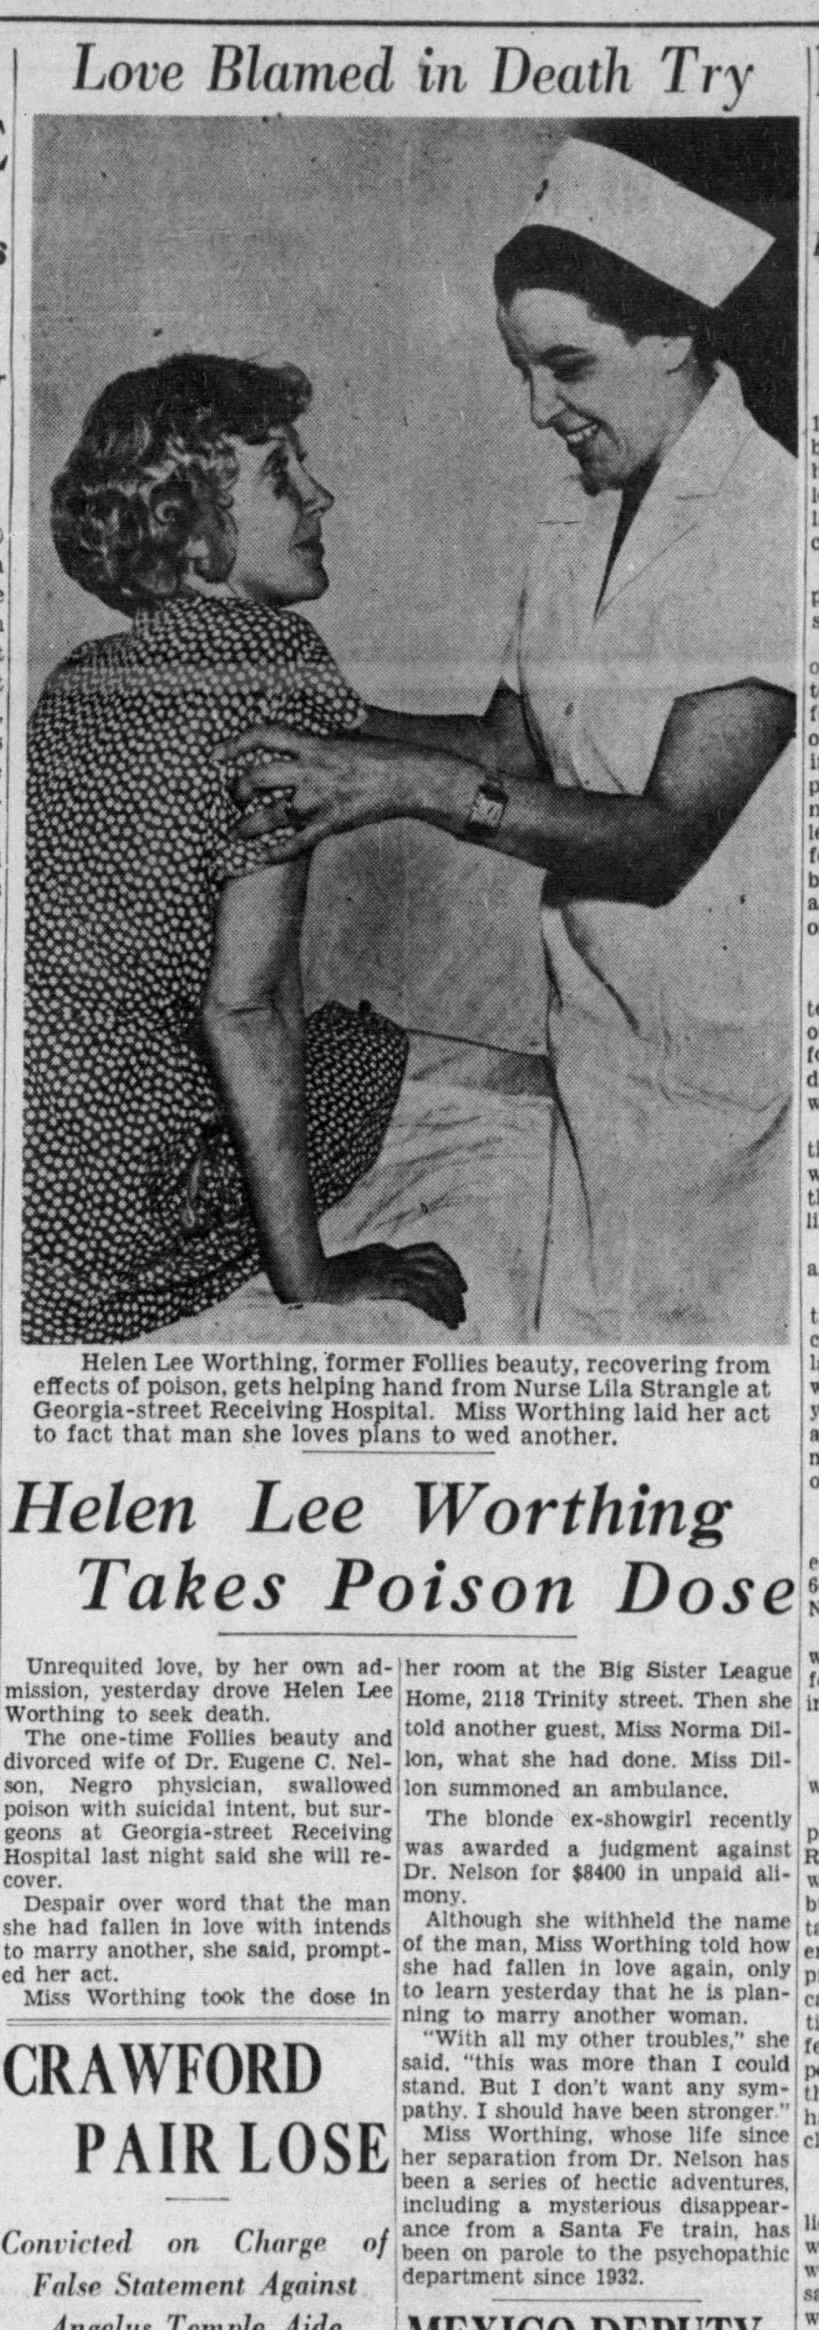 Helen Lee Worthing